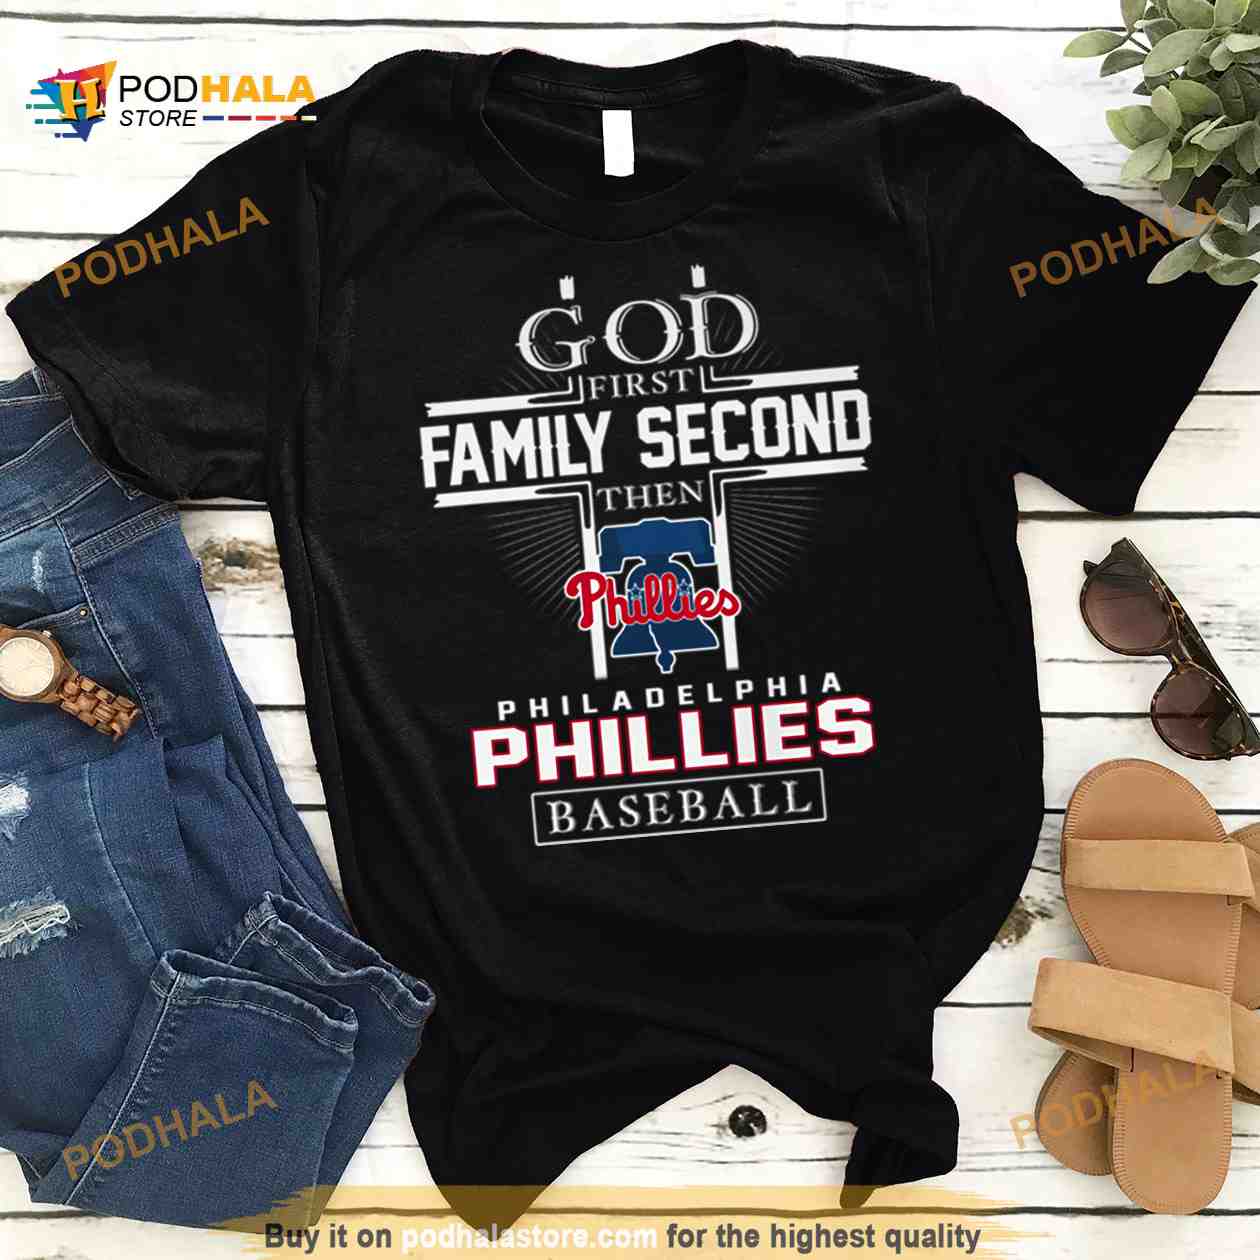 baseball shirt ideas for family